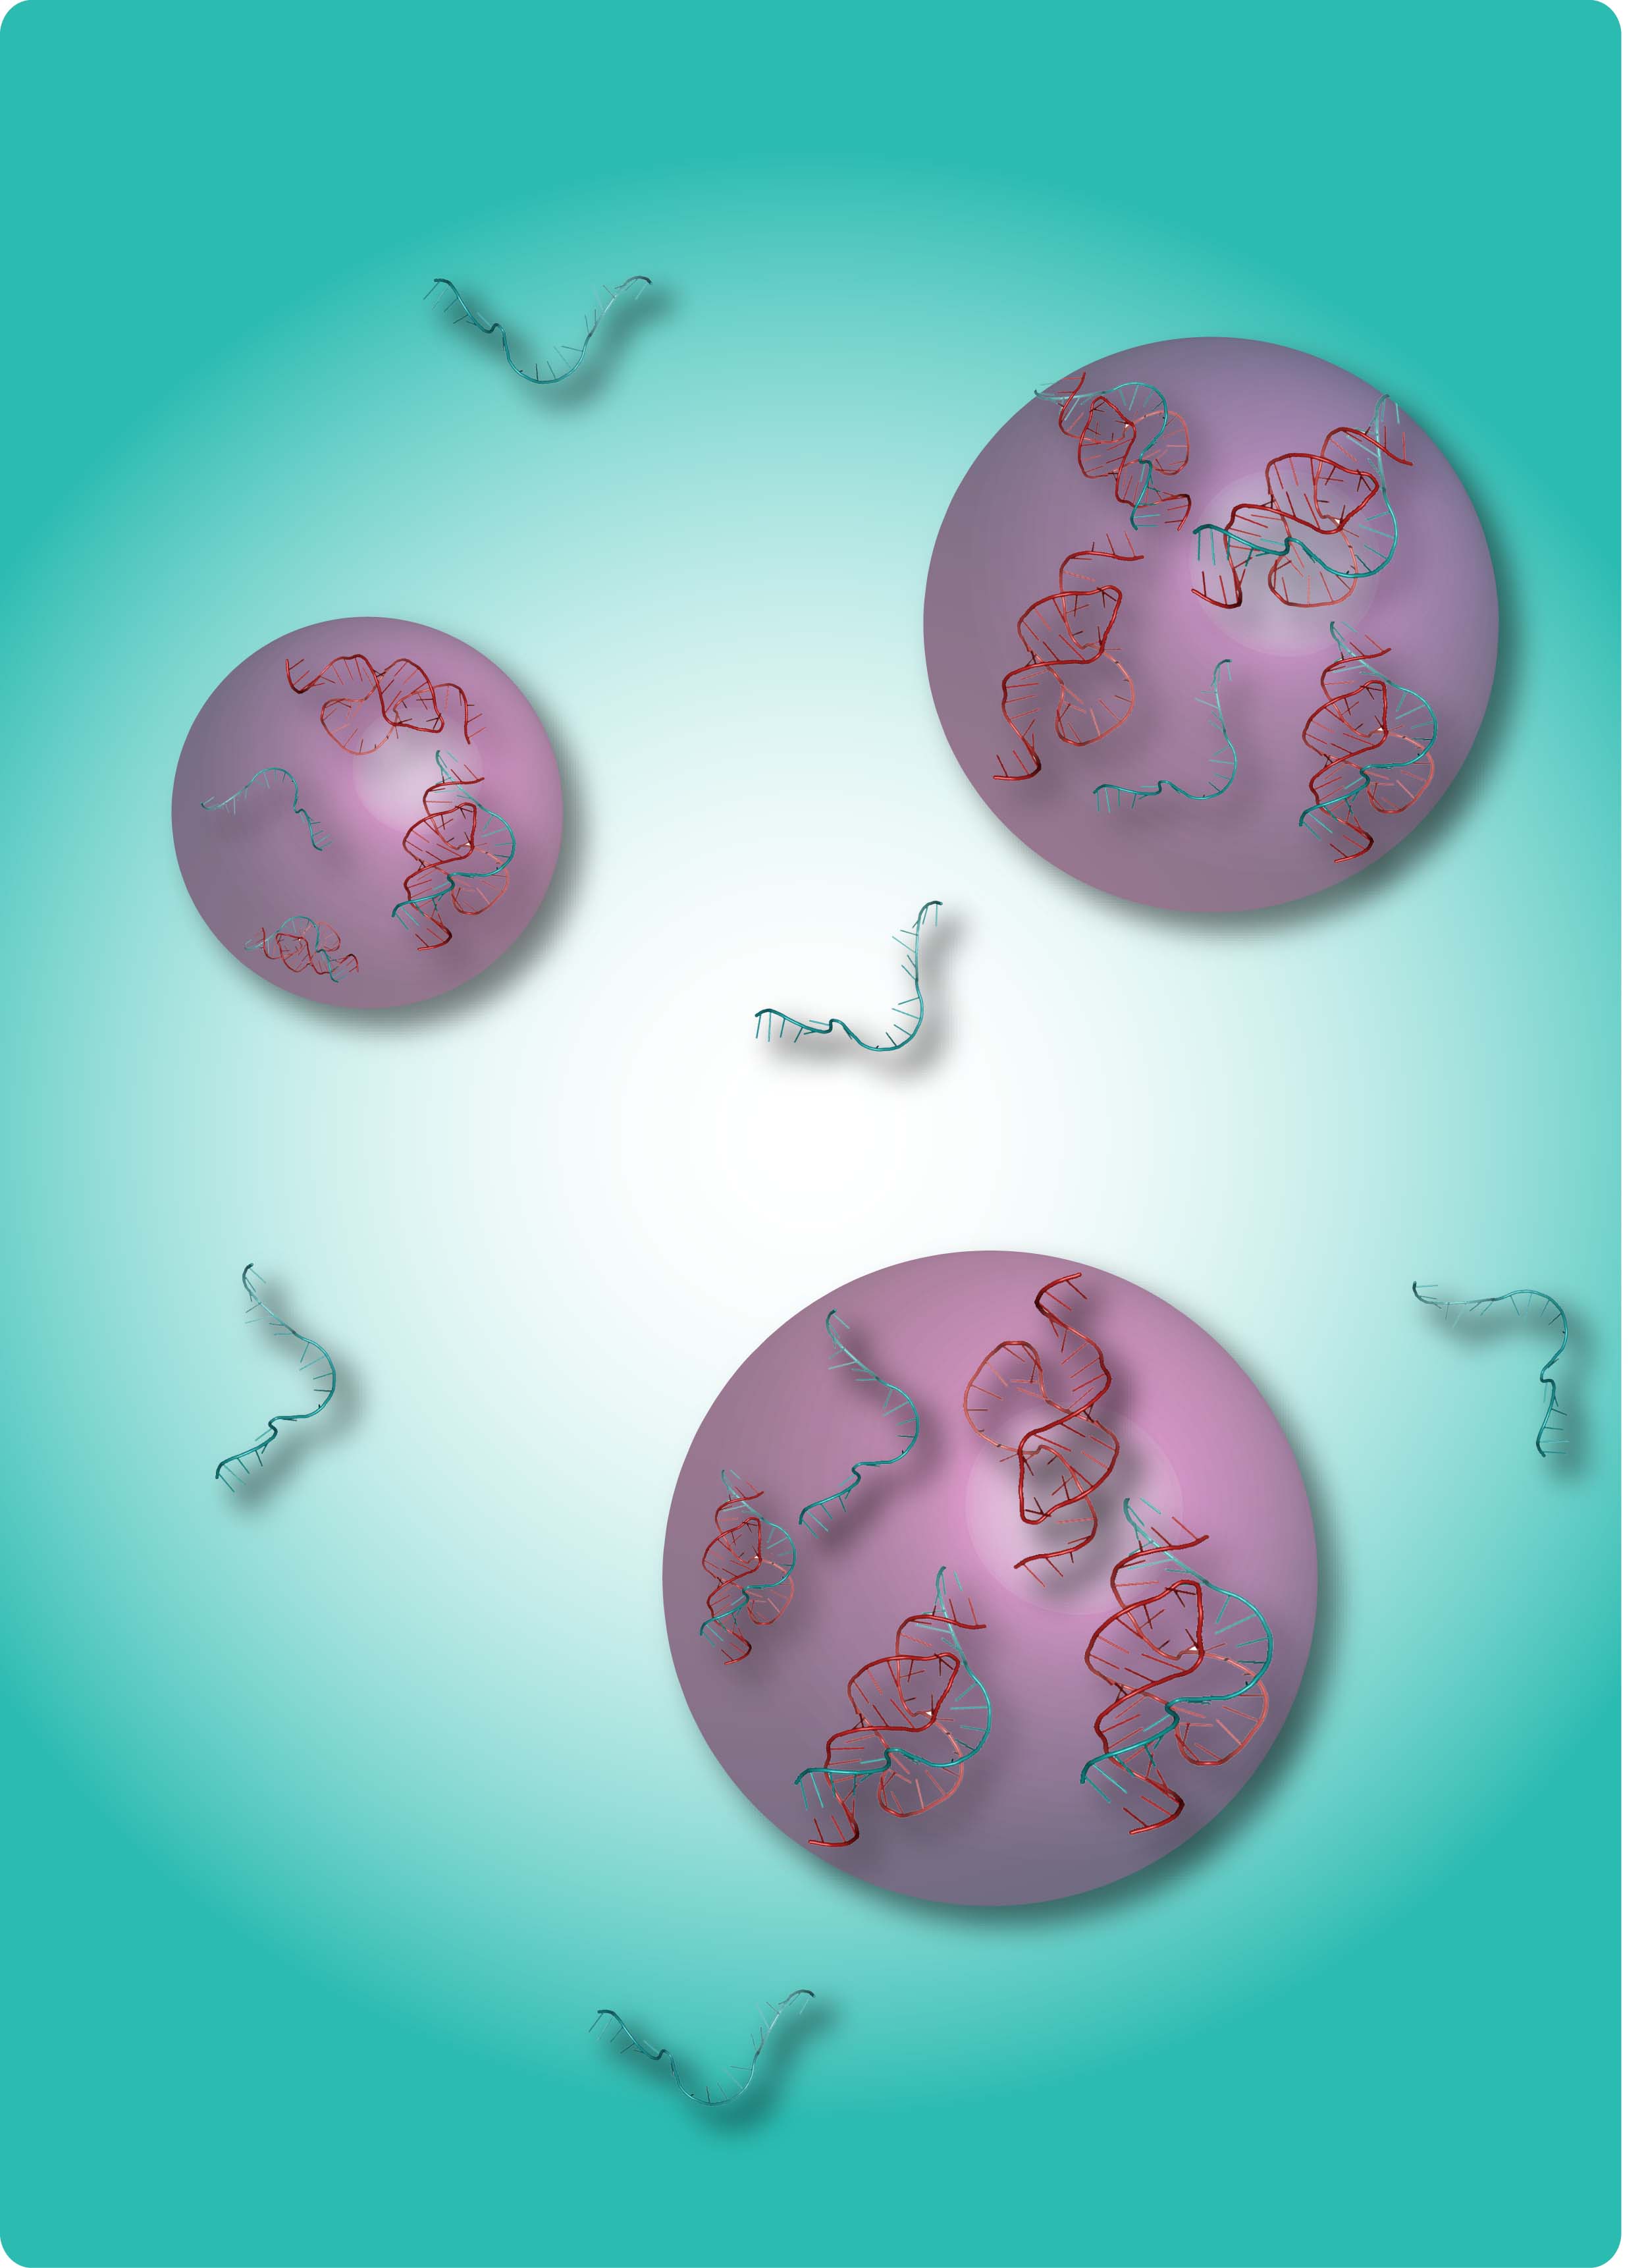 Sous certaines conditions, du dextrane mis en solution aqueuse a pu former des sphères et capturer de l'ARN à l'intérieur (filament bleu). Les molécules d'acide ribonucléique de grandes tailles (les petites étant restées à l'extérieur) ont alors pu interagir (avec les filaments rouges notamment). Ce mécanisme récréé en laboratoire pourrait être à l'origine de la vie... © C.-A. Strulson